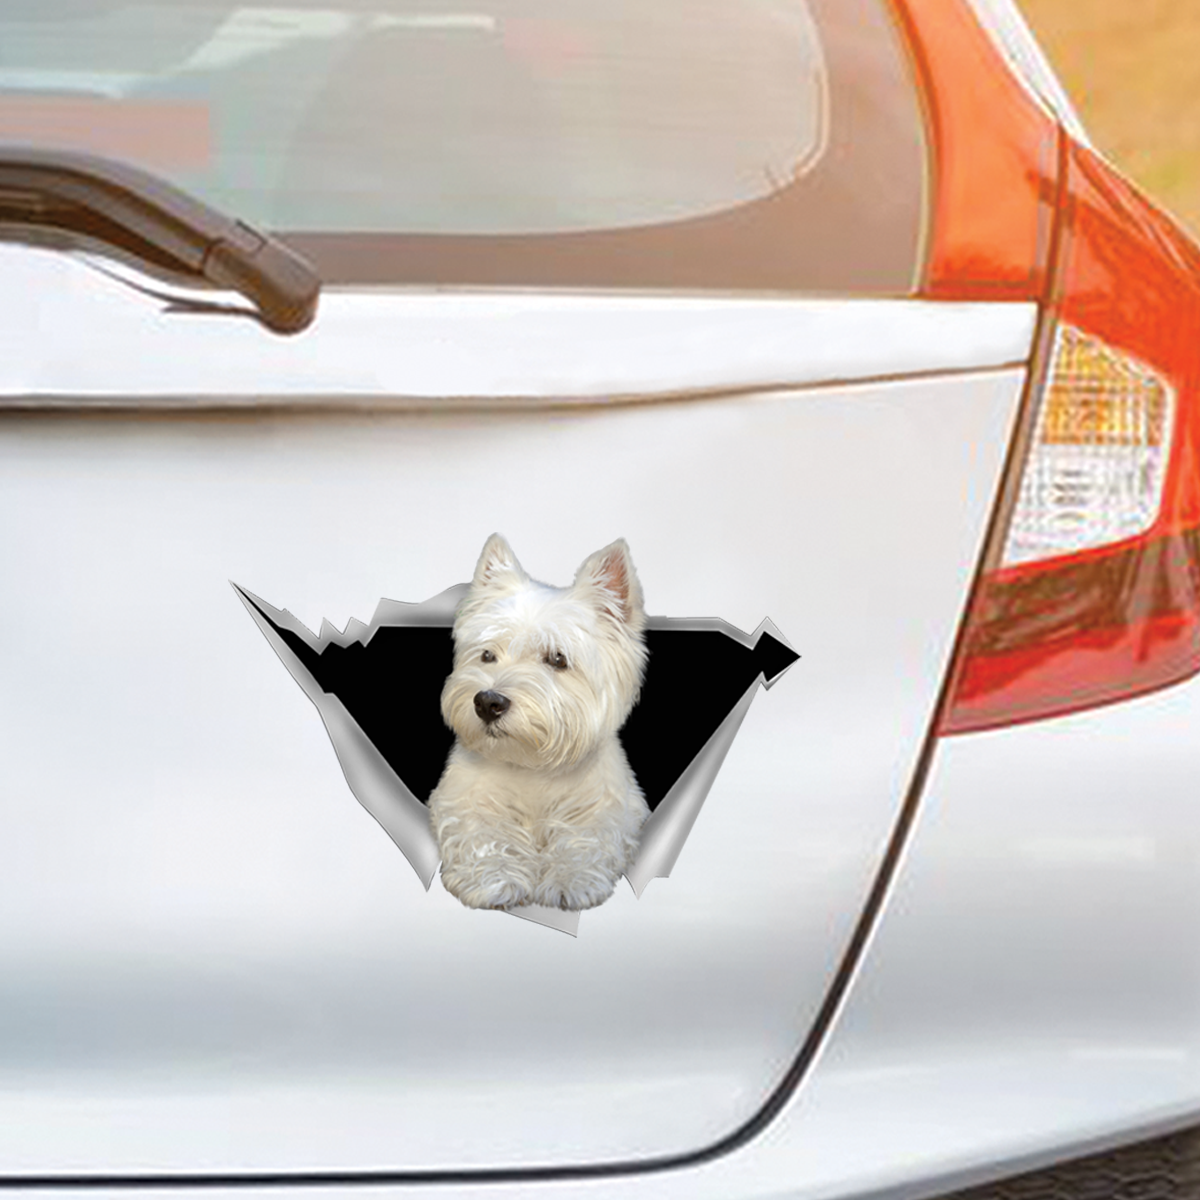 We Like Riding In Cars - West Highland White Terrier Car/ Door/ Fridge/ Laptop Sticker V1